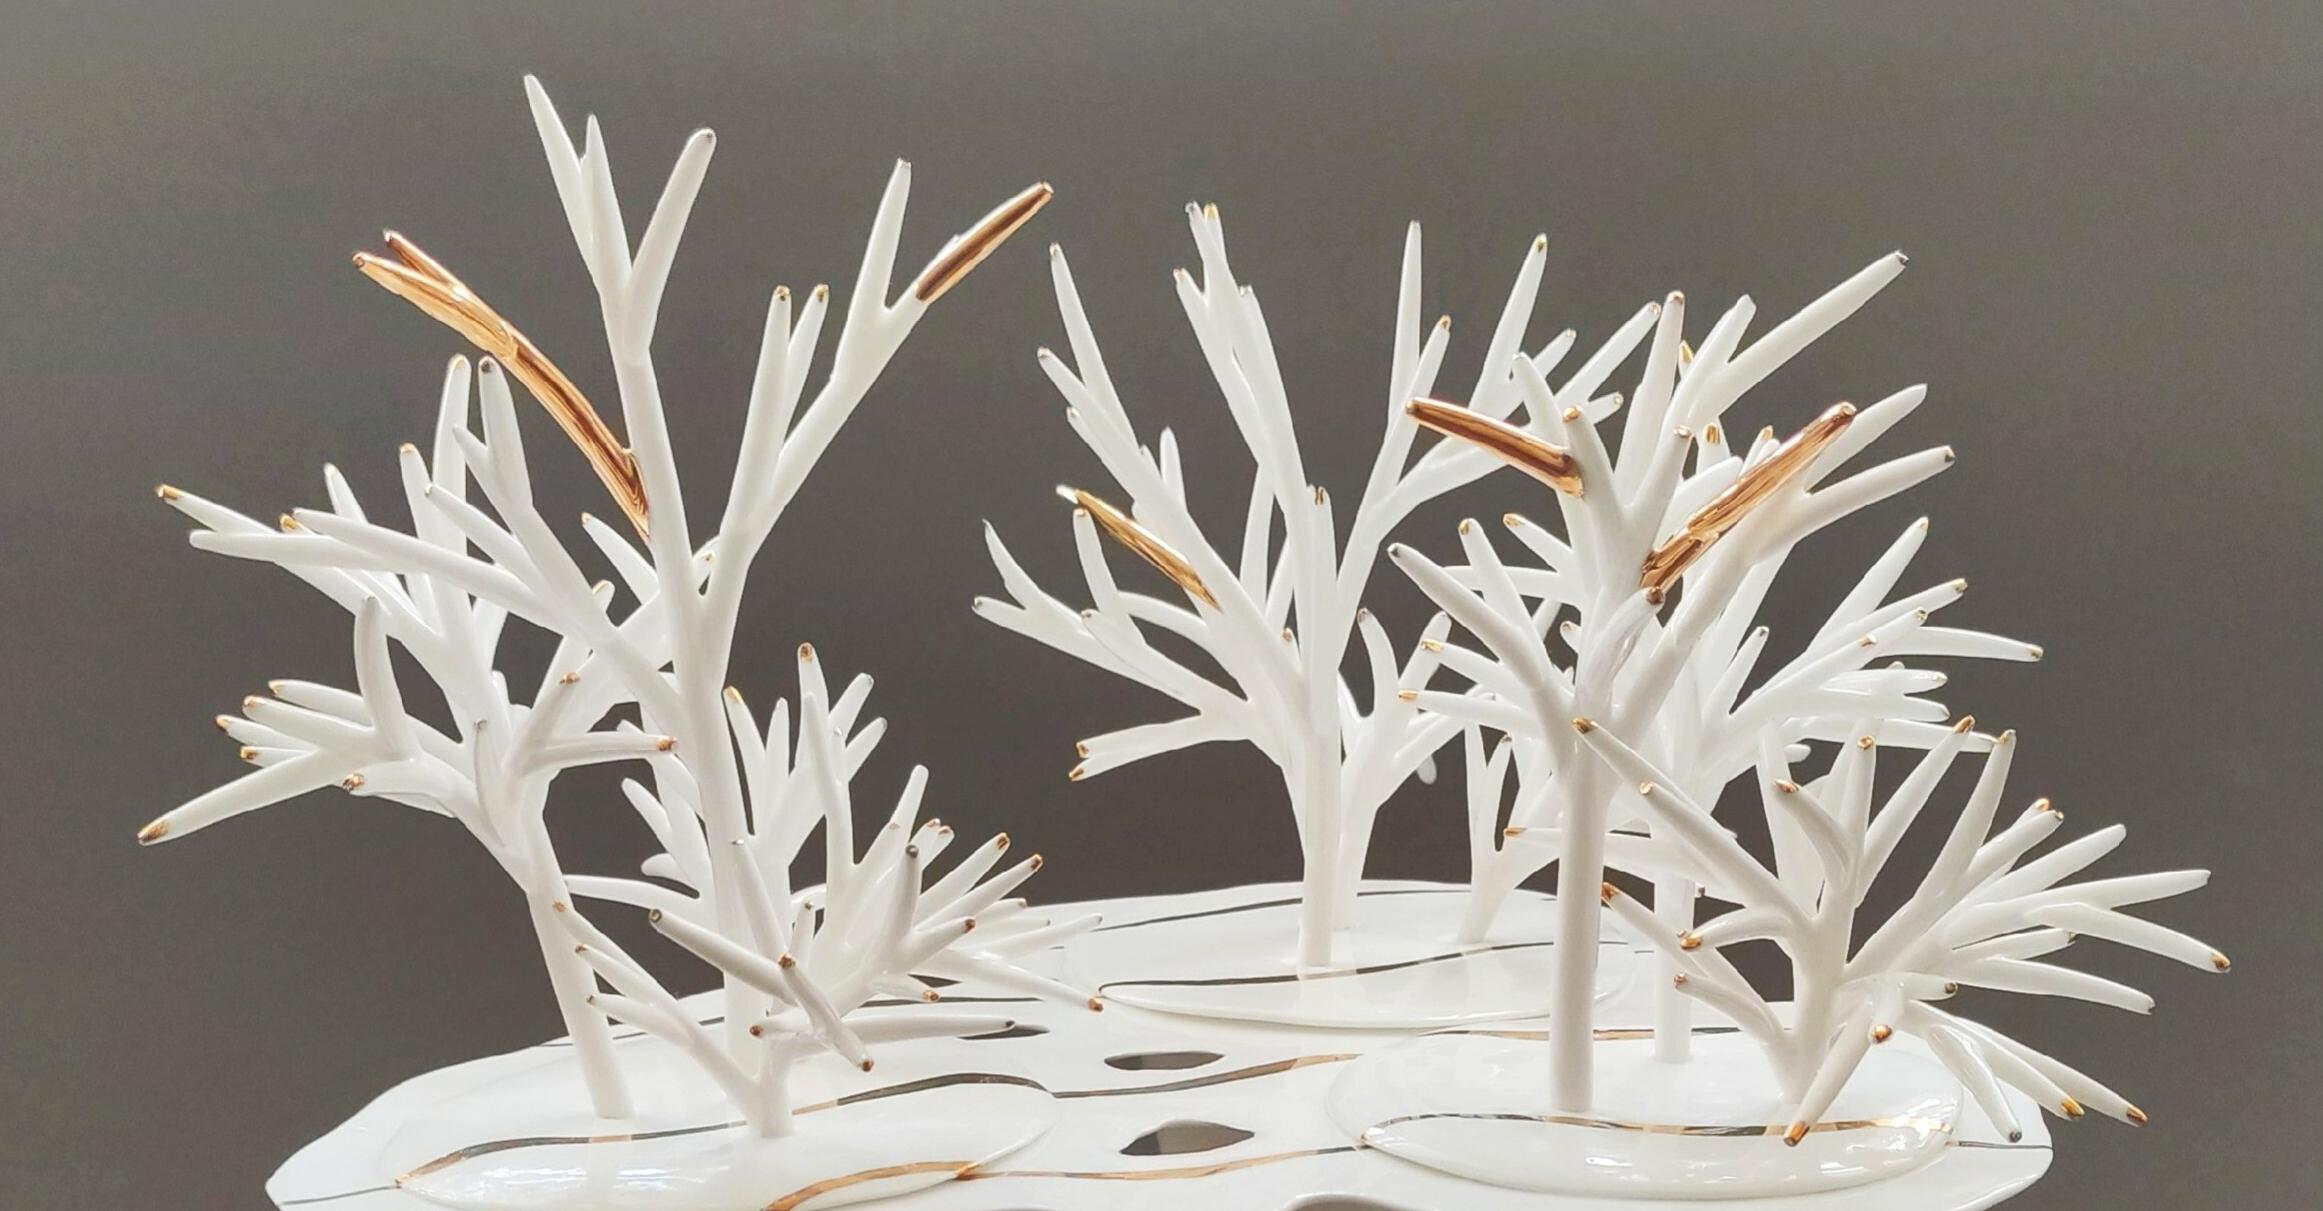 "Baltoj tėkmėj": Ramutės Juršienės porceliano darbų paroda